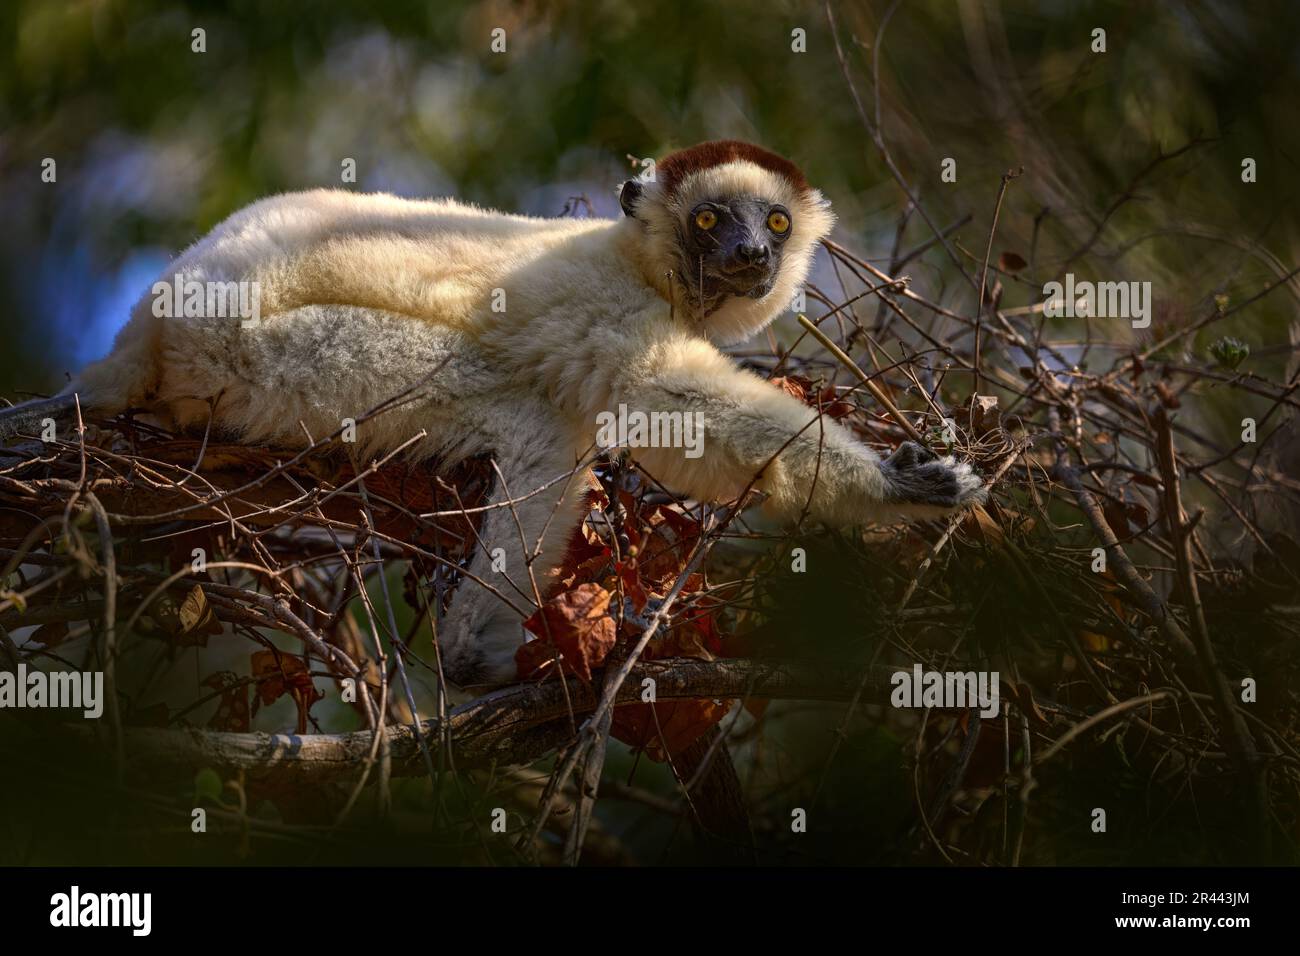 Ritratto di lemuri nella foresta. Fauna selvatica Madagascar, Verreauxs Sifaka, Propithecus verreauxi, testa di scimmia particolare in Kirindy Forest, Madagascar. Lemure in Foto Stock